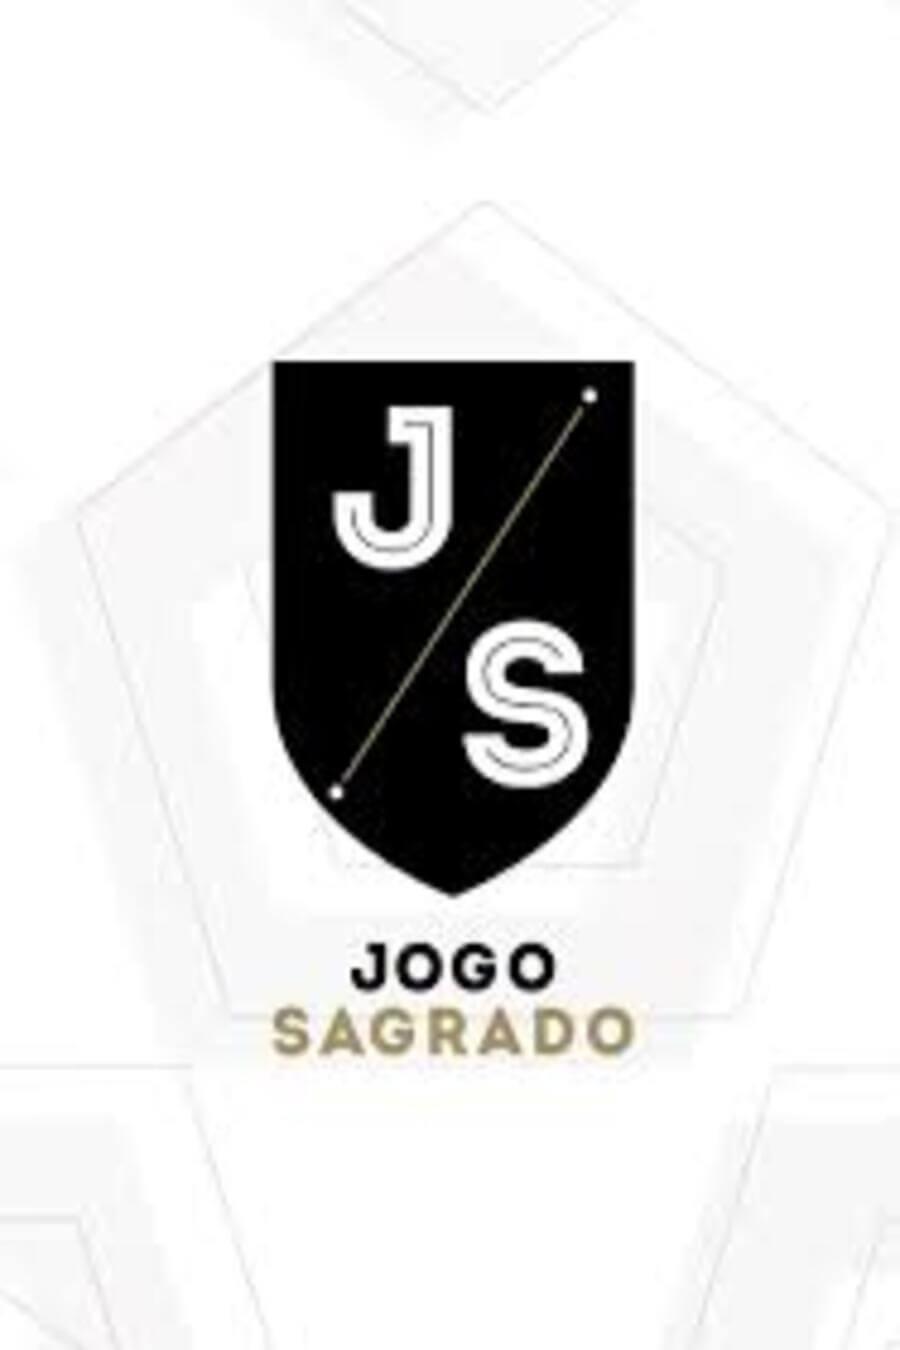 TV ratings for Jogo Sagrado in Portugal. Fox Sports Brasil TV series